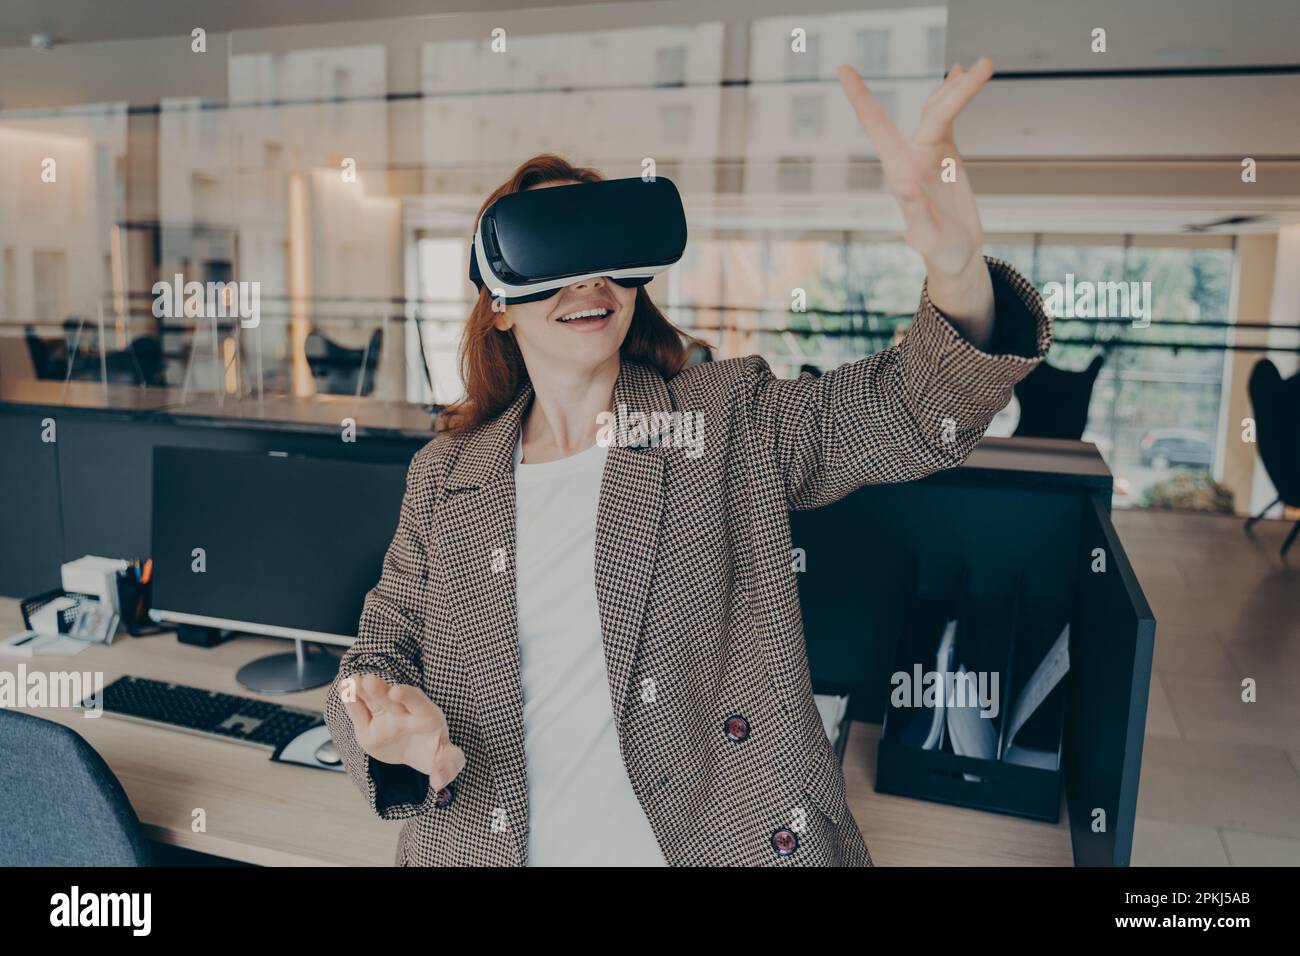 Employée de bureau utilisant la réalité virtuelle pour visualiser et parcourir les fichiers de projet, utilisant ses mains pour contrôler les objets dans le monde numérique, les affaires enthousiastes Banque D'Images